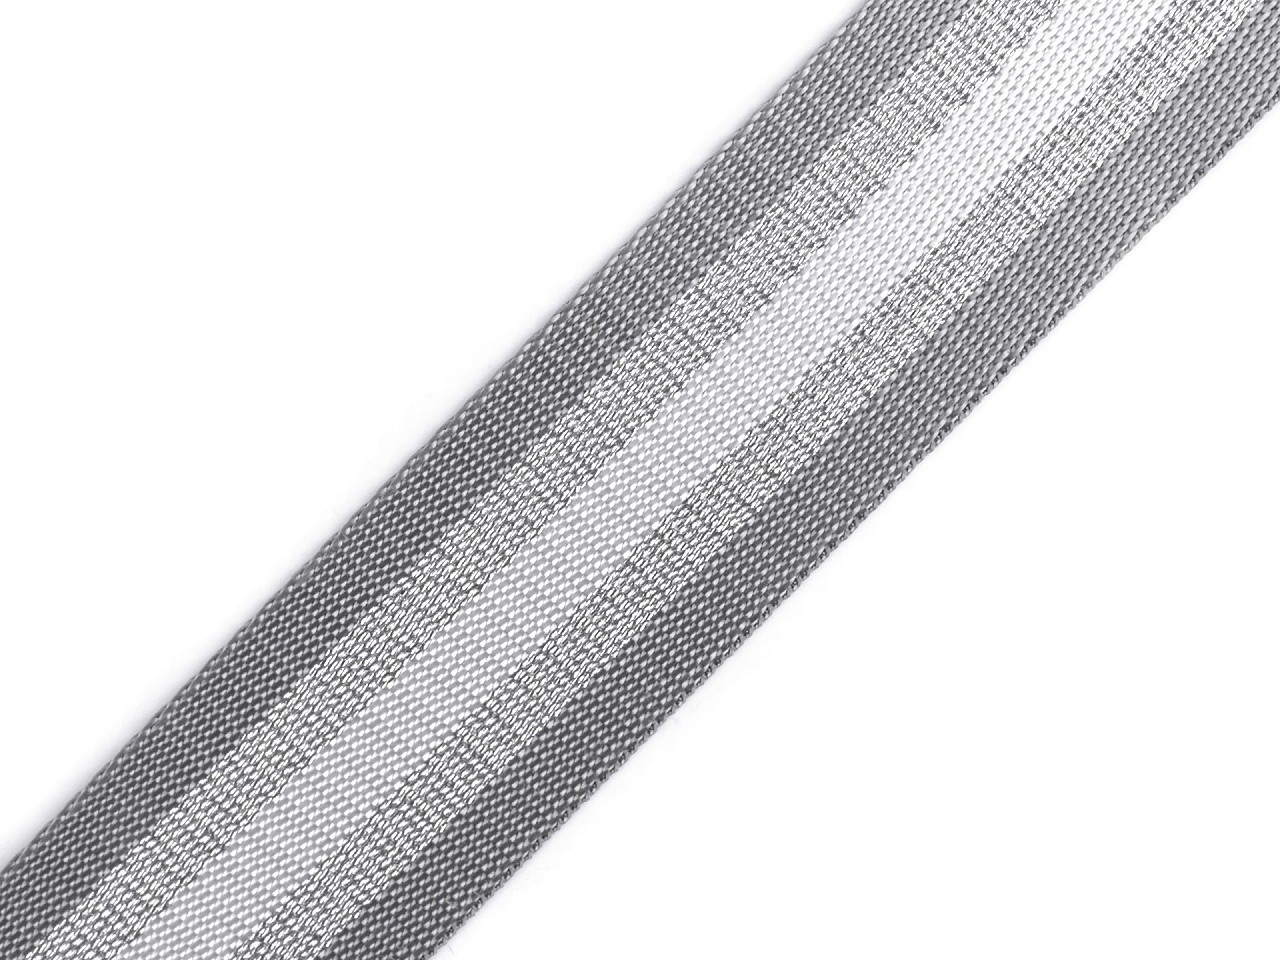 Hladký oboustranný popruh s lurexem šíře 50 mm, barva 4 šedá světlá stříbrná